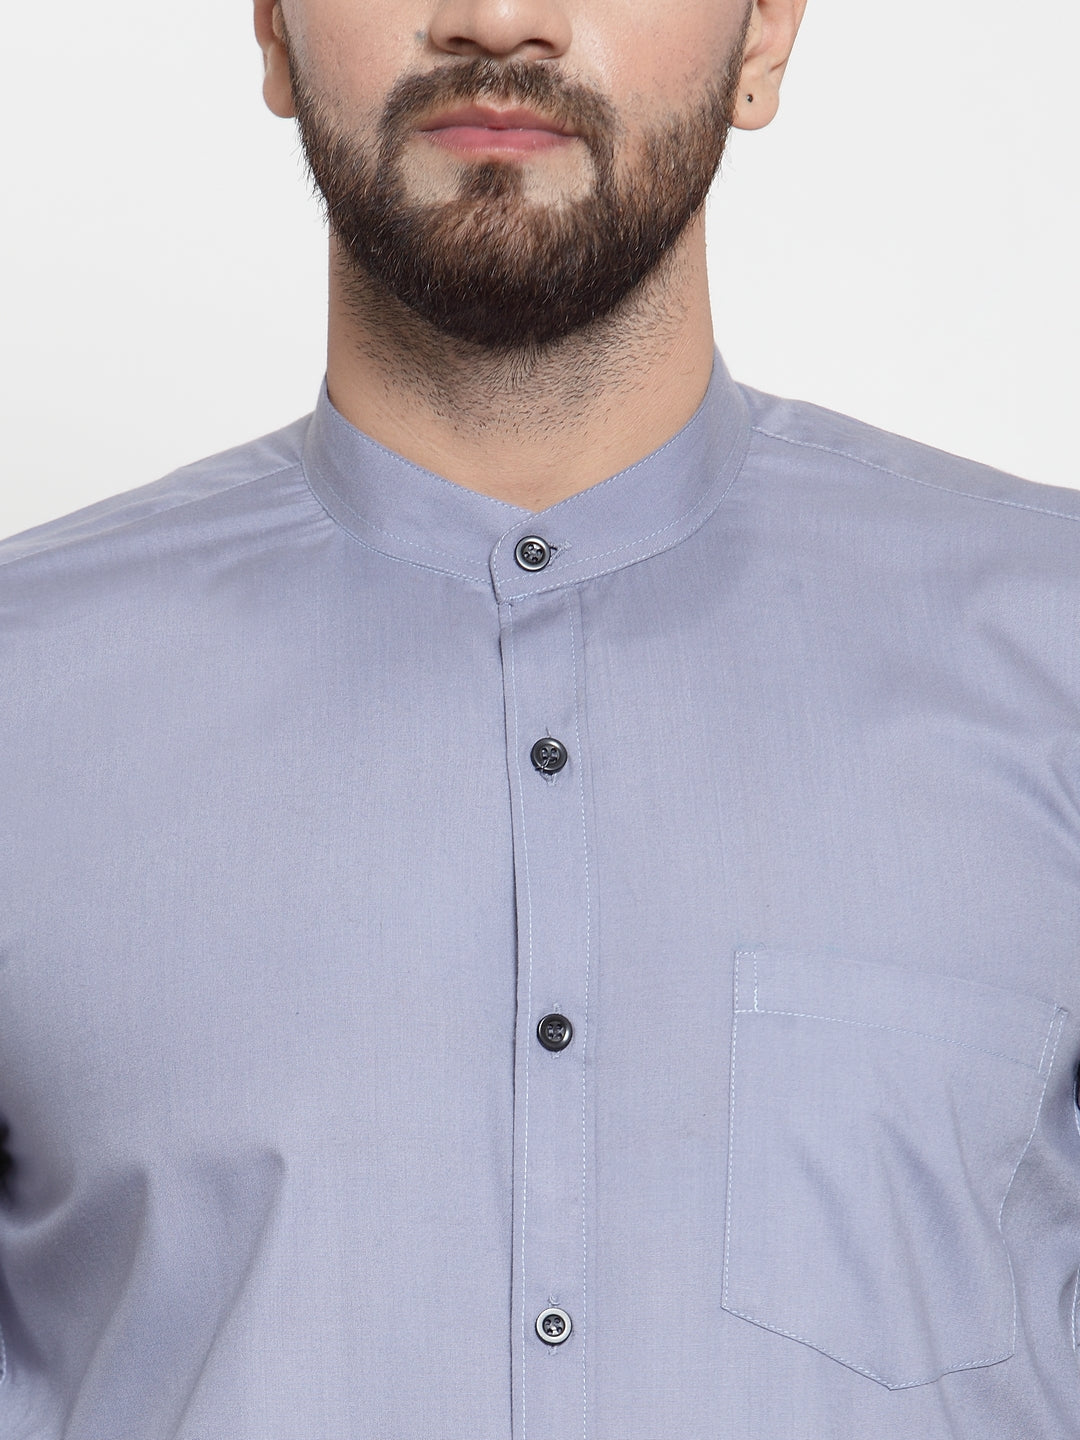 Men's Grey Cotton Solid Mandarin Collar Formal Shirts ( SF 726Light-Grey ) - Jainish